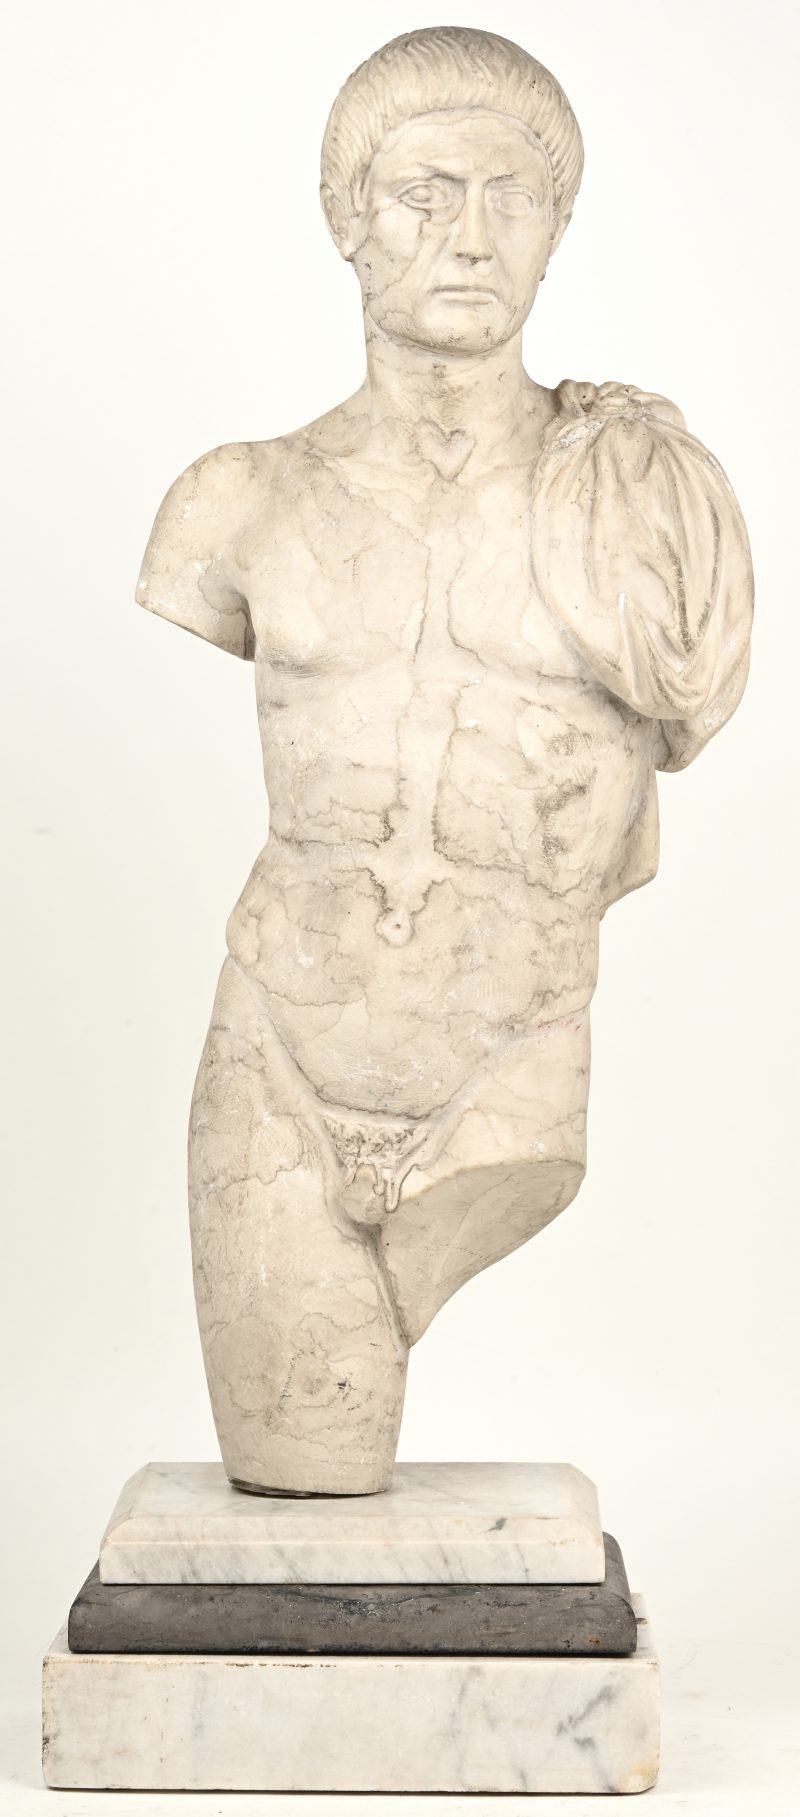 “Romeinse figuur.” Stenen sculptuur op marmeren voet. Genummerd 1165. Draagt monogram. Enkele kleine beschadigingen.